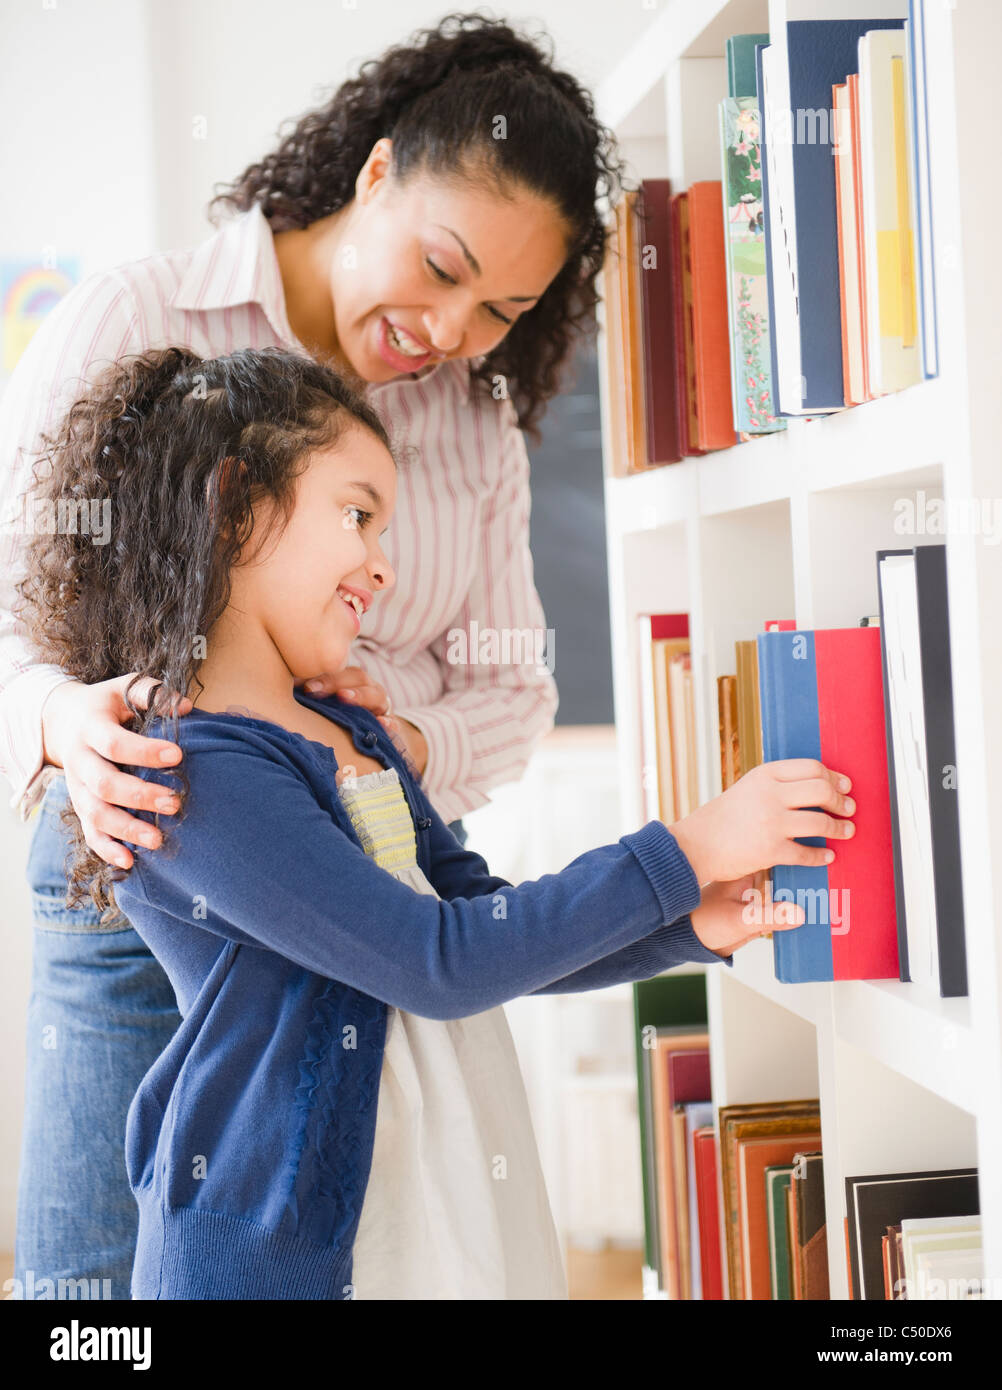 Mother helping daughter sélectionnez livre sur la tablette Banque D'Images